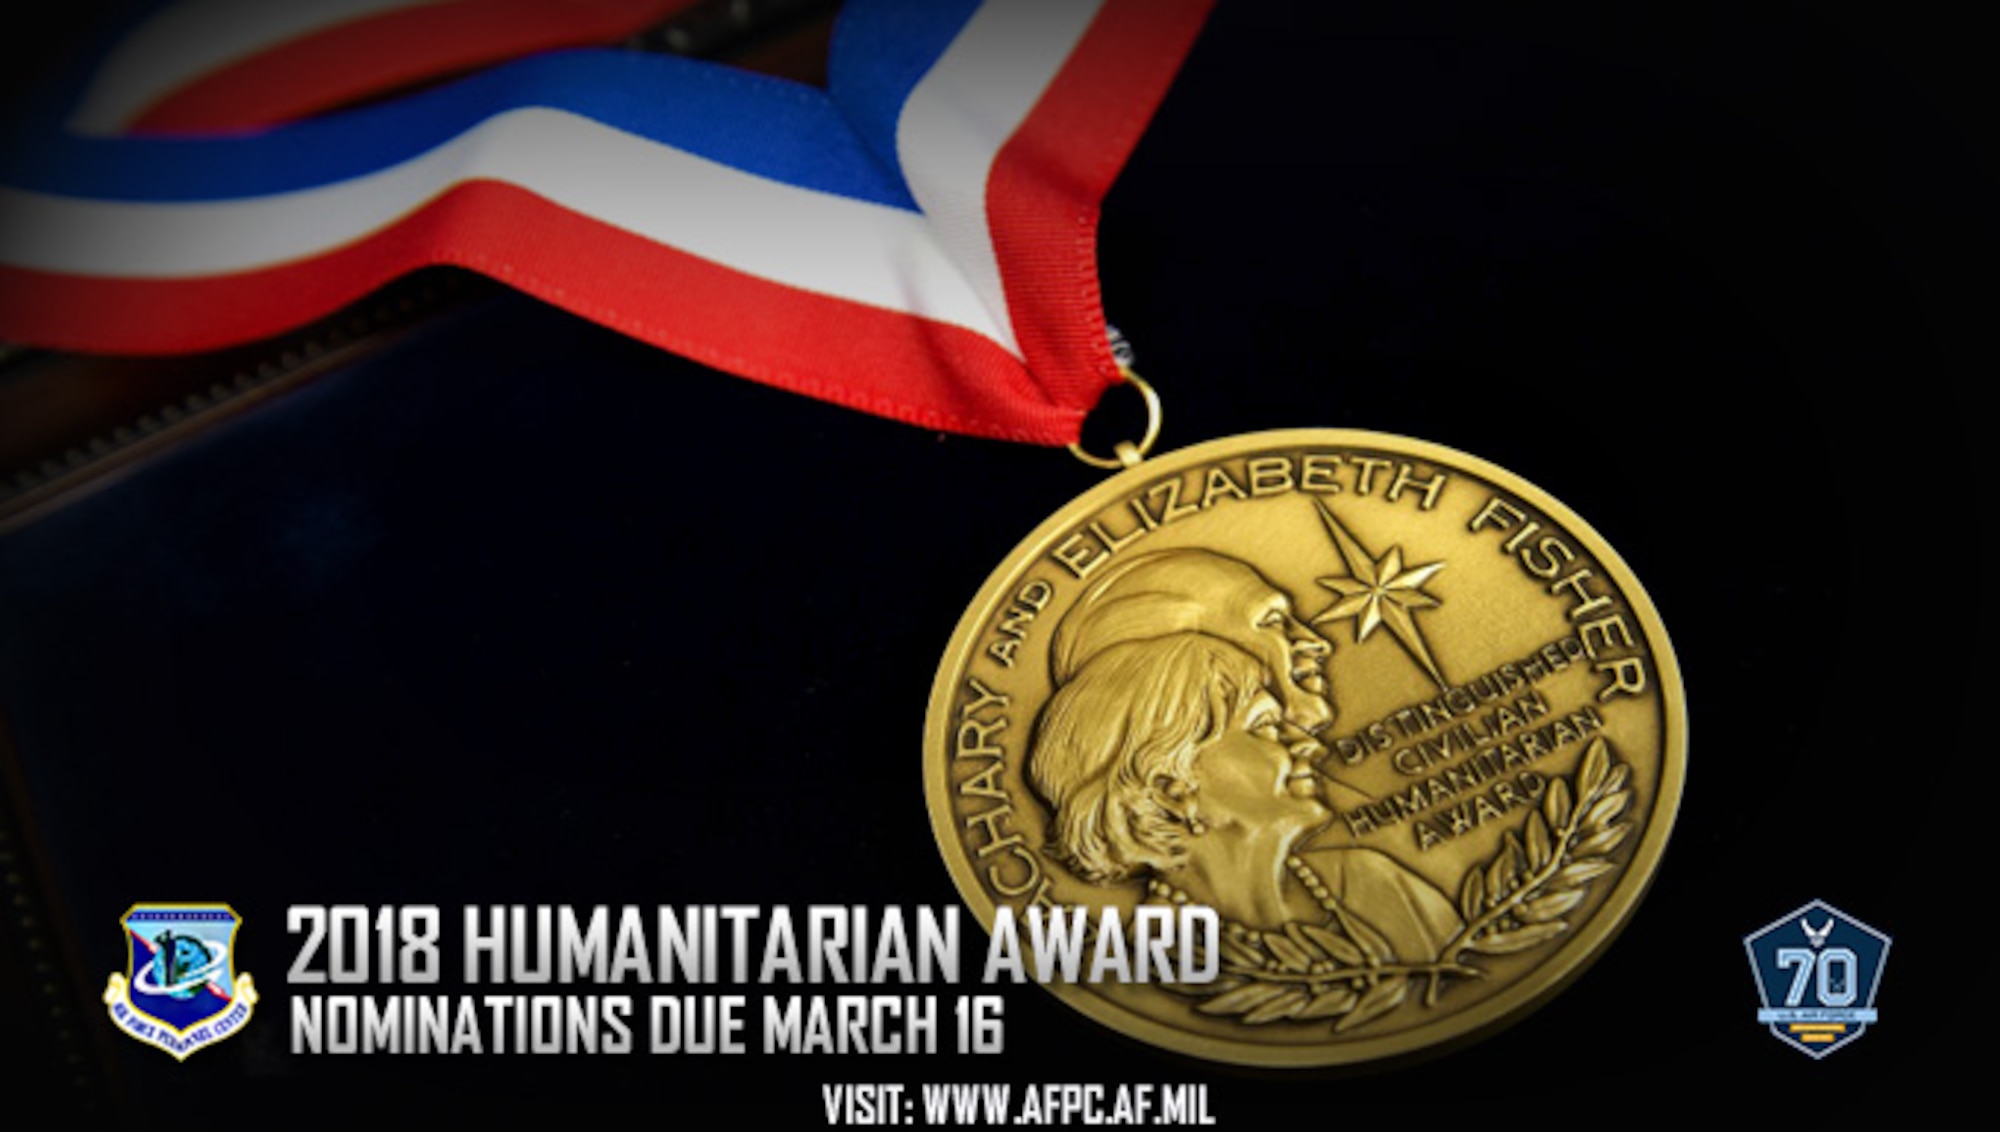 201 humanitarian award; nominations due March 16